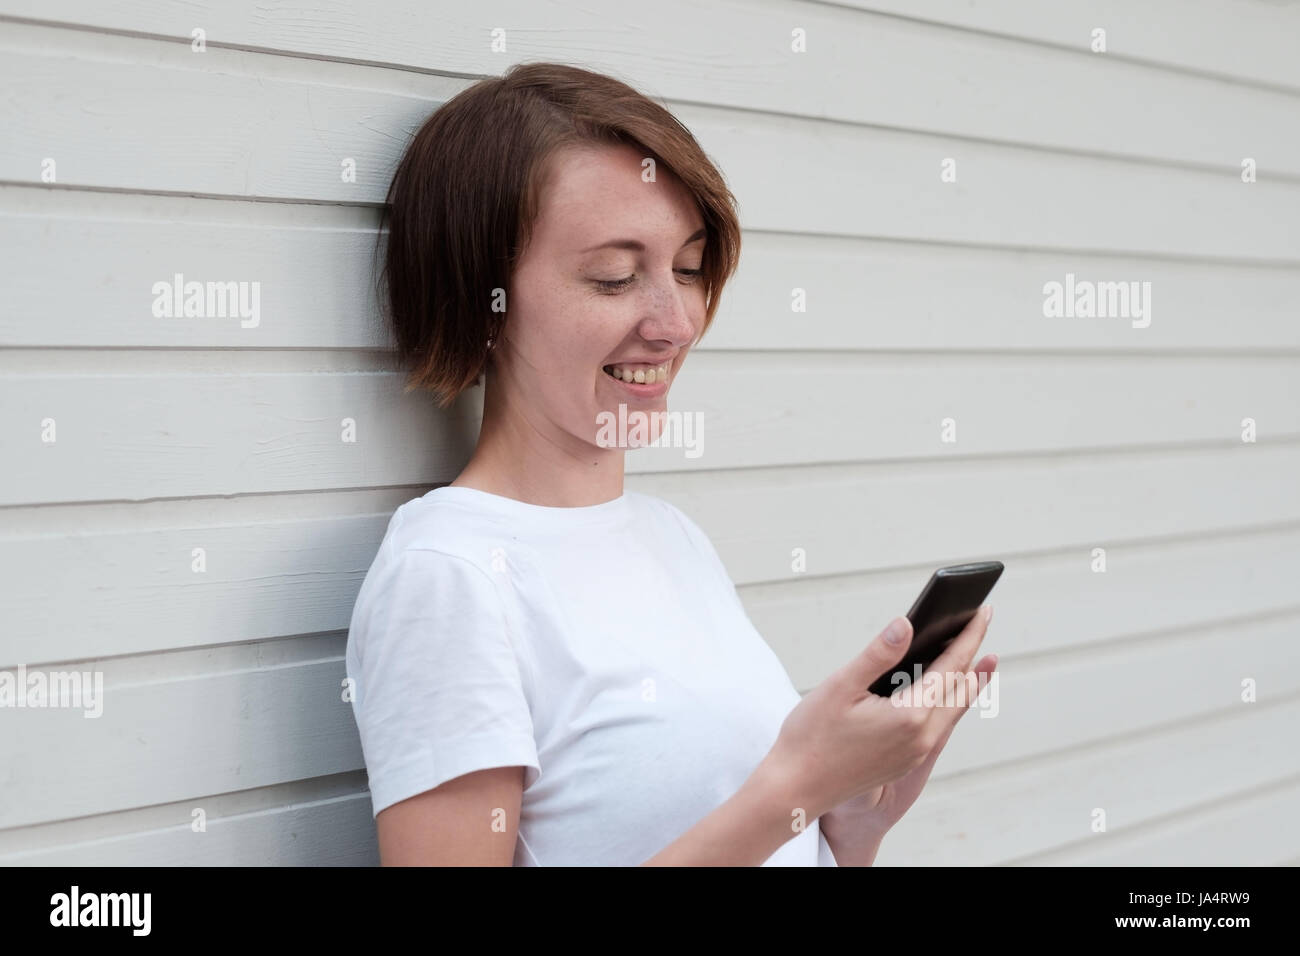 Une fille avec des taches de rousseur est debout près du mur en bois et lecture des sms dans le téléphone. La communication par les appareils modernes. Banque D'Images